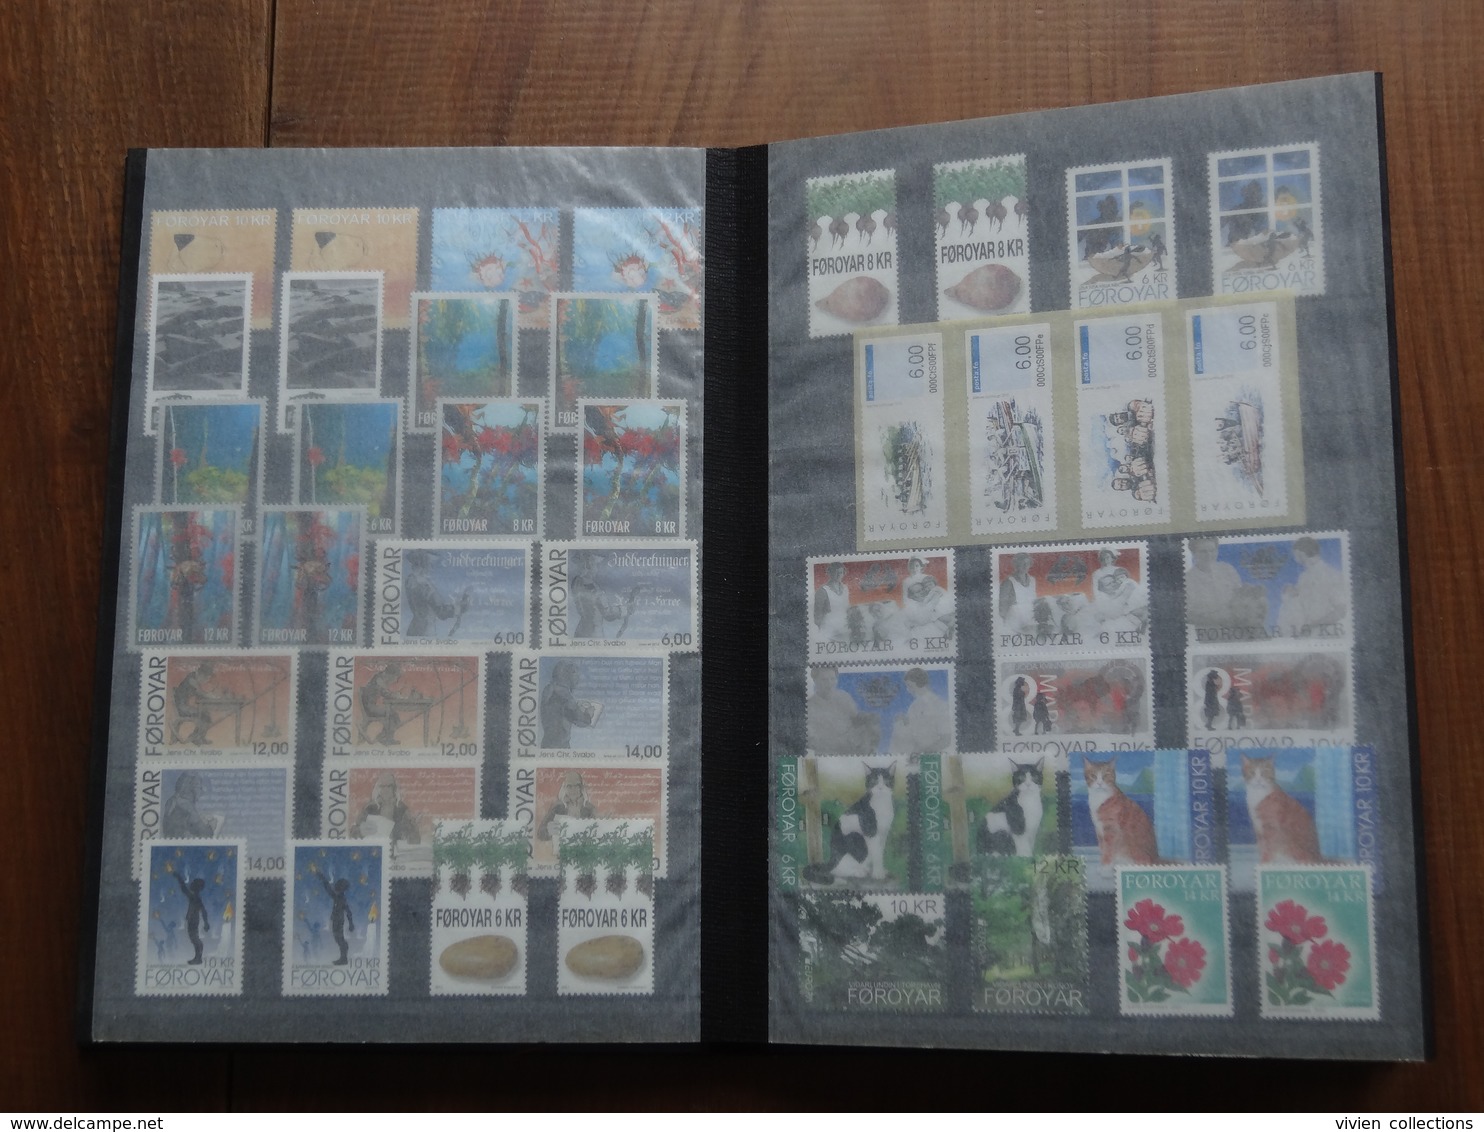 Collection de timbres des iles Féroé (Danemark) 1991 à 2016 en générale x 2 exemplaires neufs dans un album faciale 700€